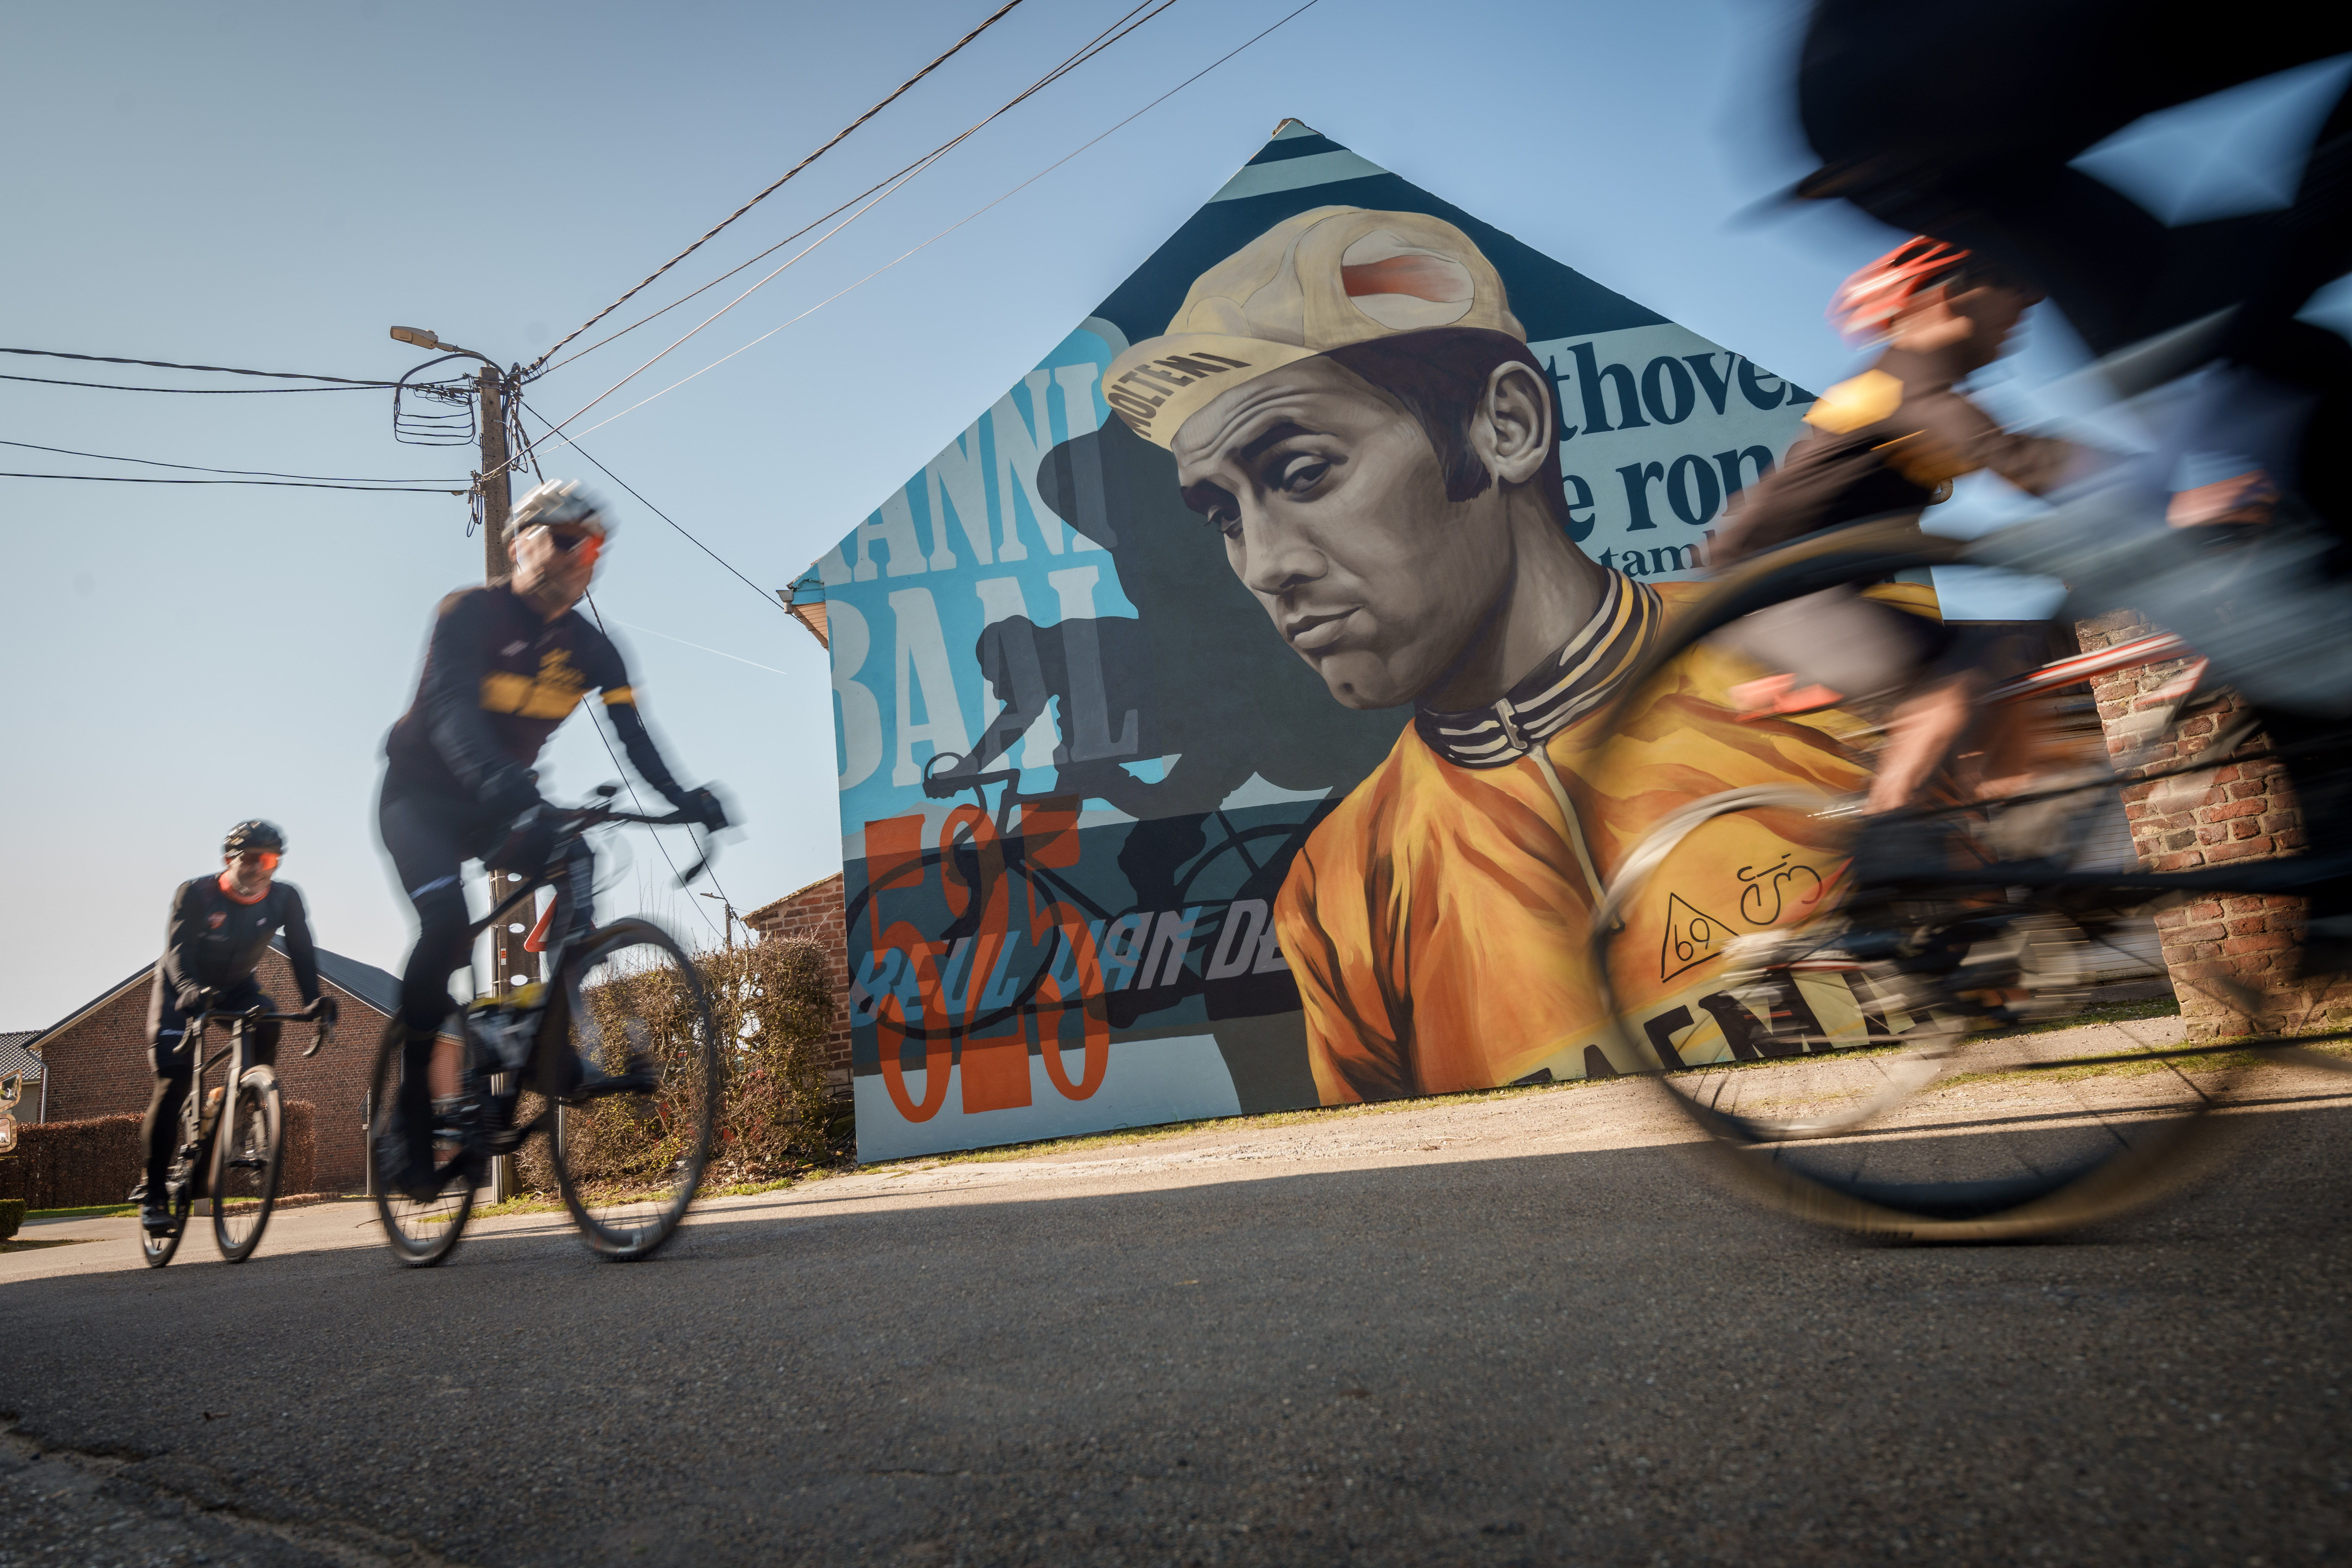 De muurschilderingen verhogen de beleving langs de sportieve fietsroutes.